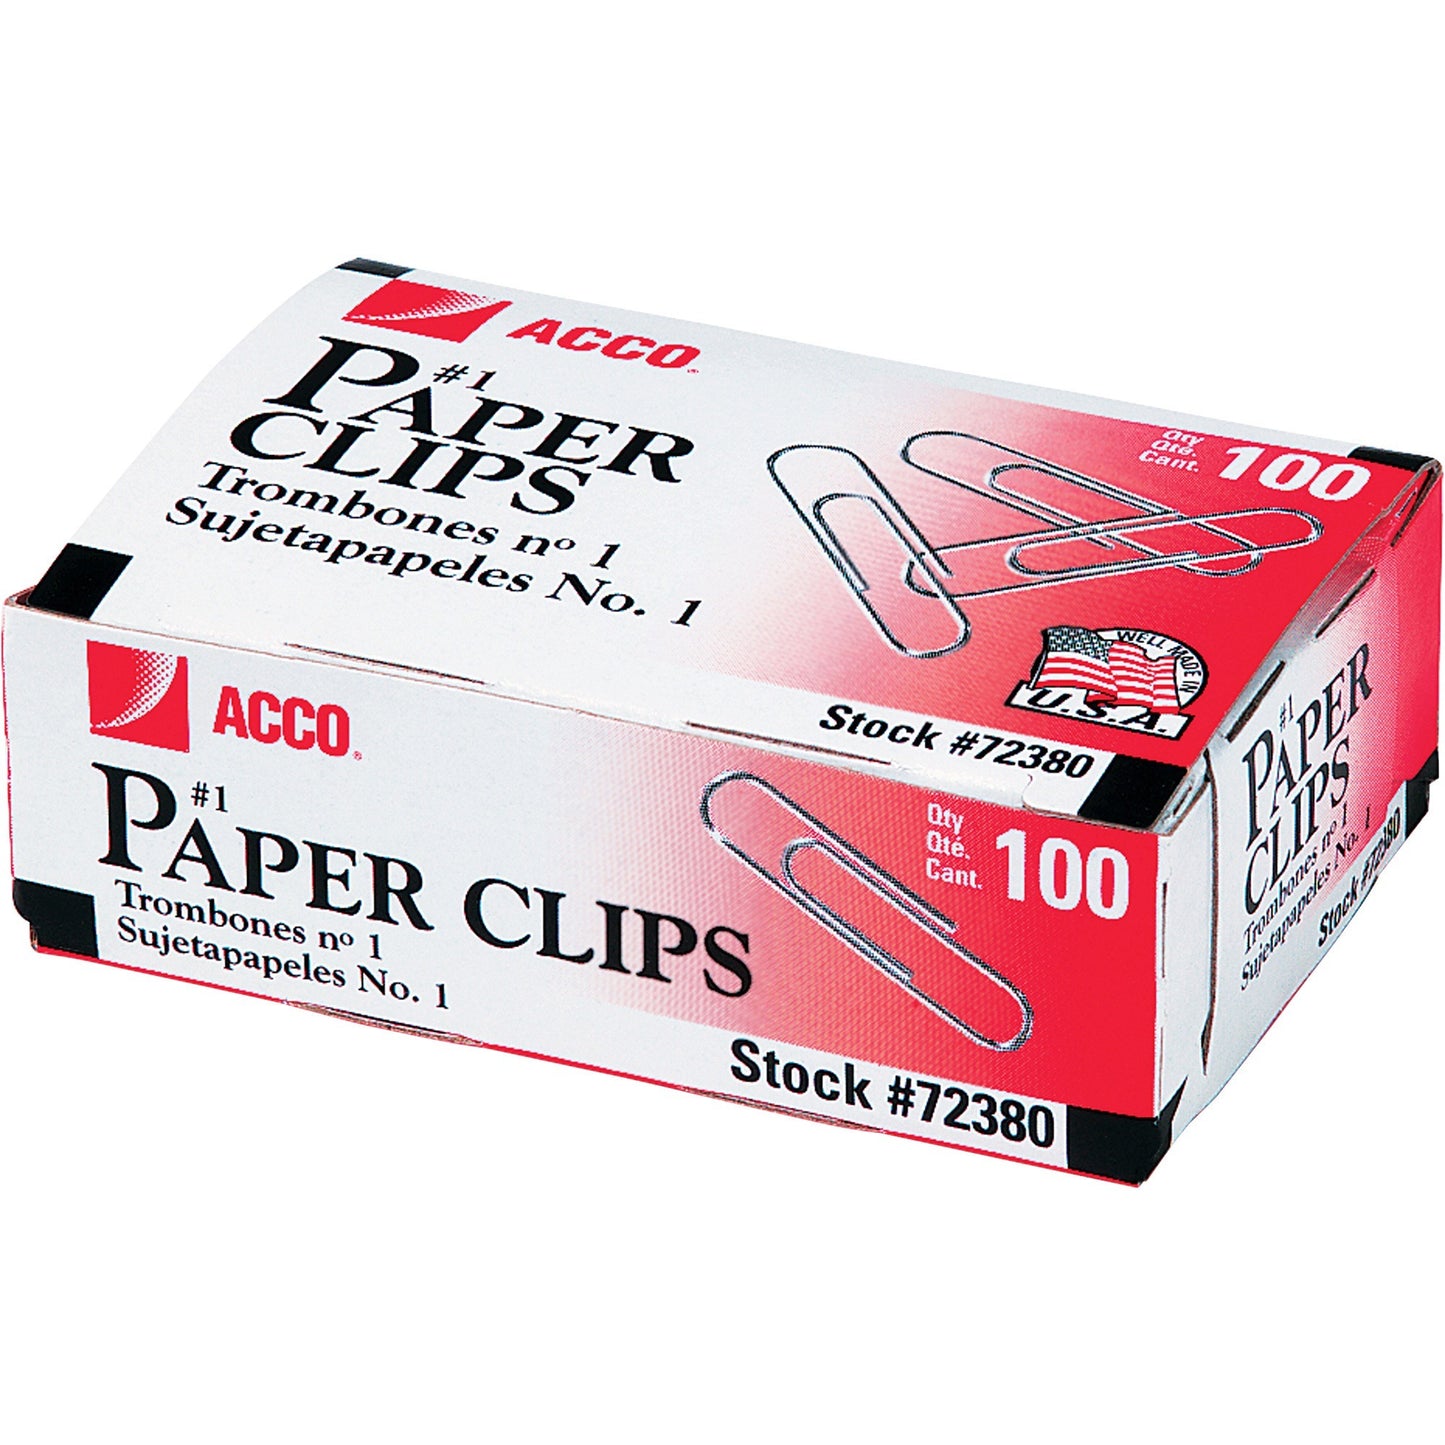 ACCO Premium Paper Clips